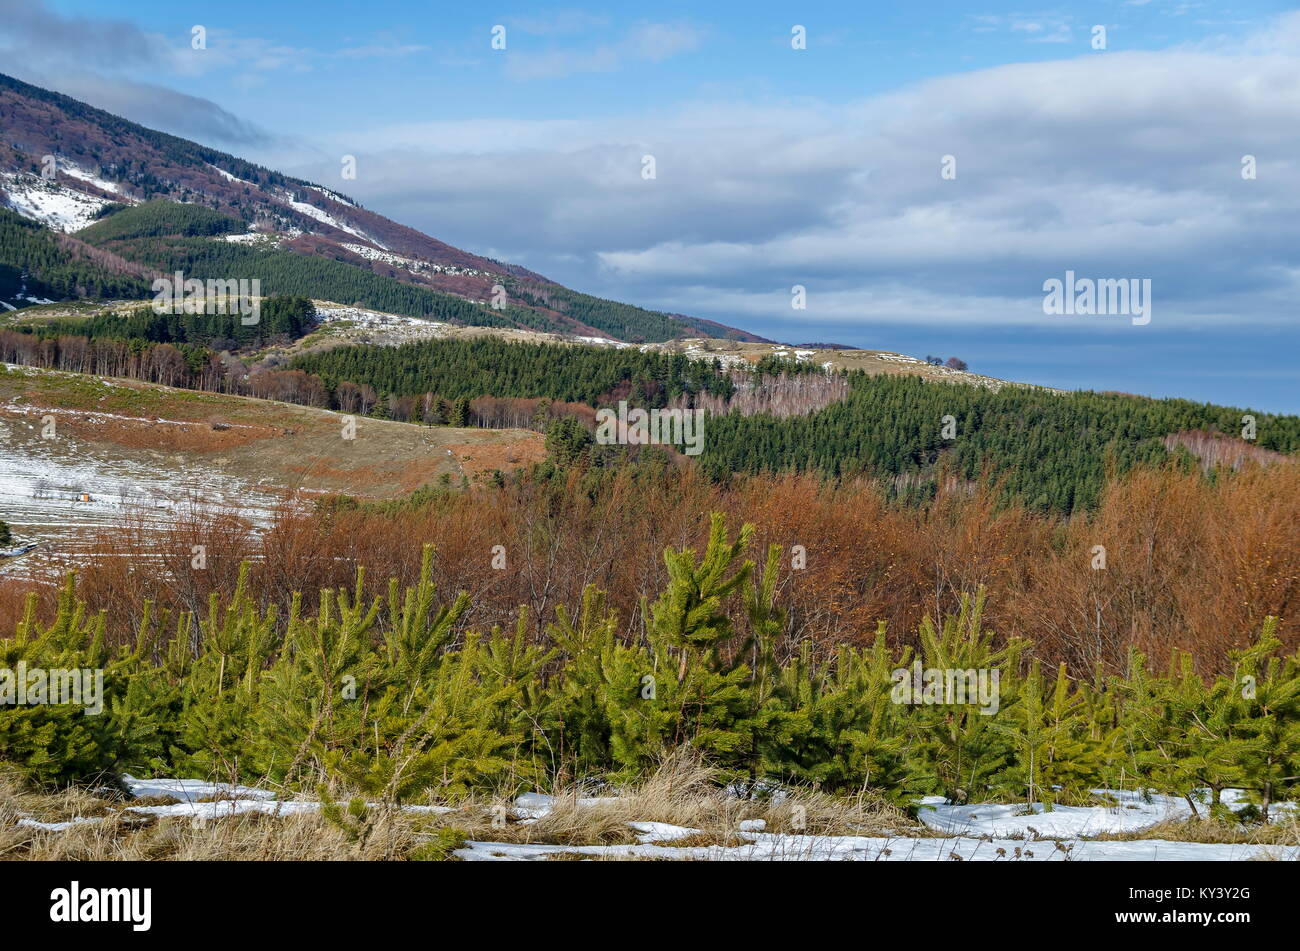 Majestätischen Blick auf bewölkter Himmel, im Winter die Berge, verschneite Lichtung, Nadel- und Laubwald von Plana Berg in Richtung Berg Vitosha, Bulgariens, Europa Stockfoto